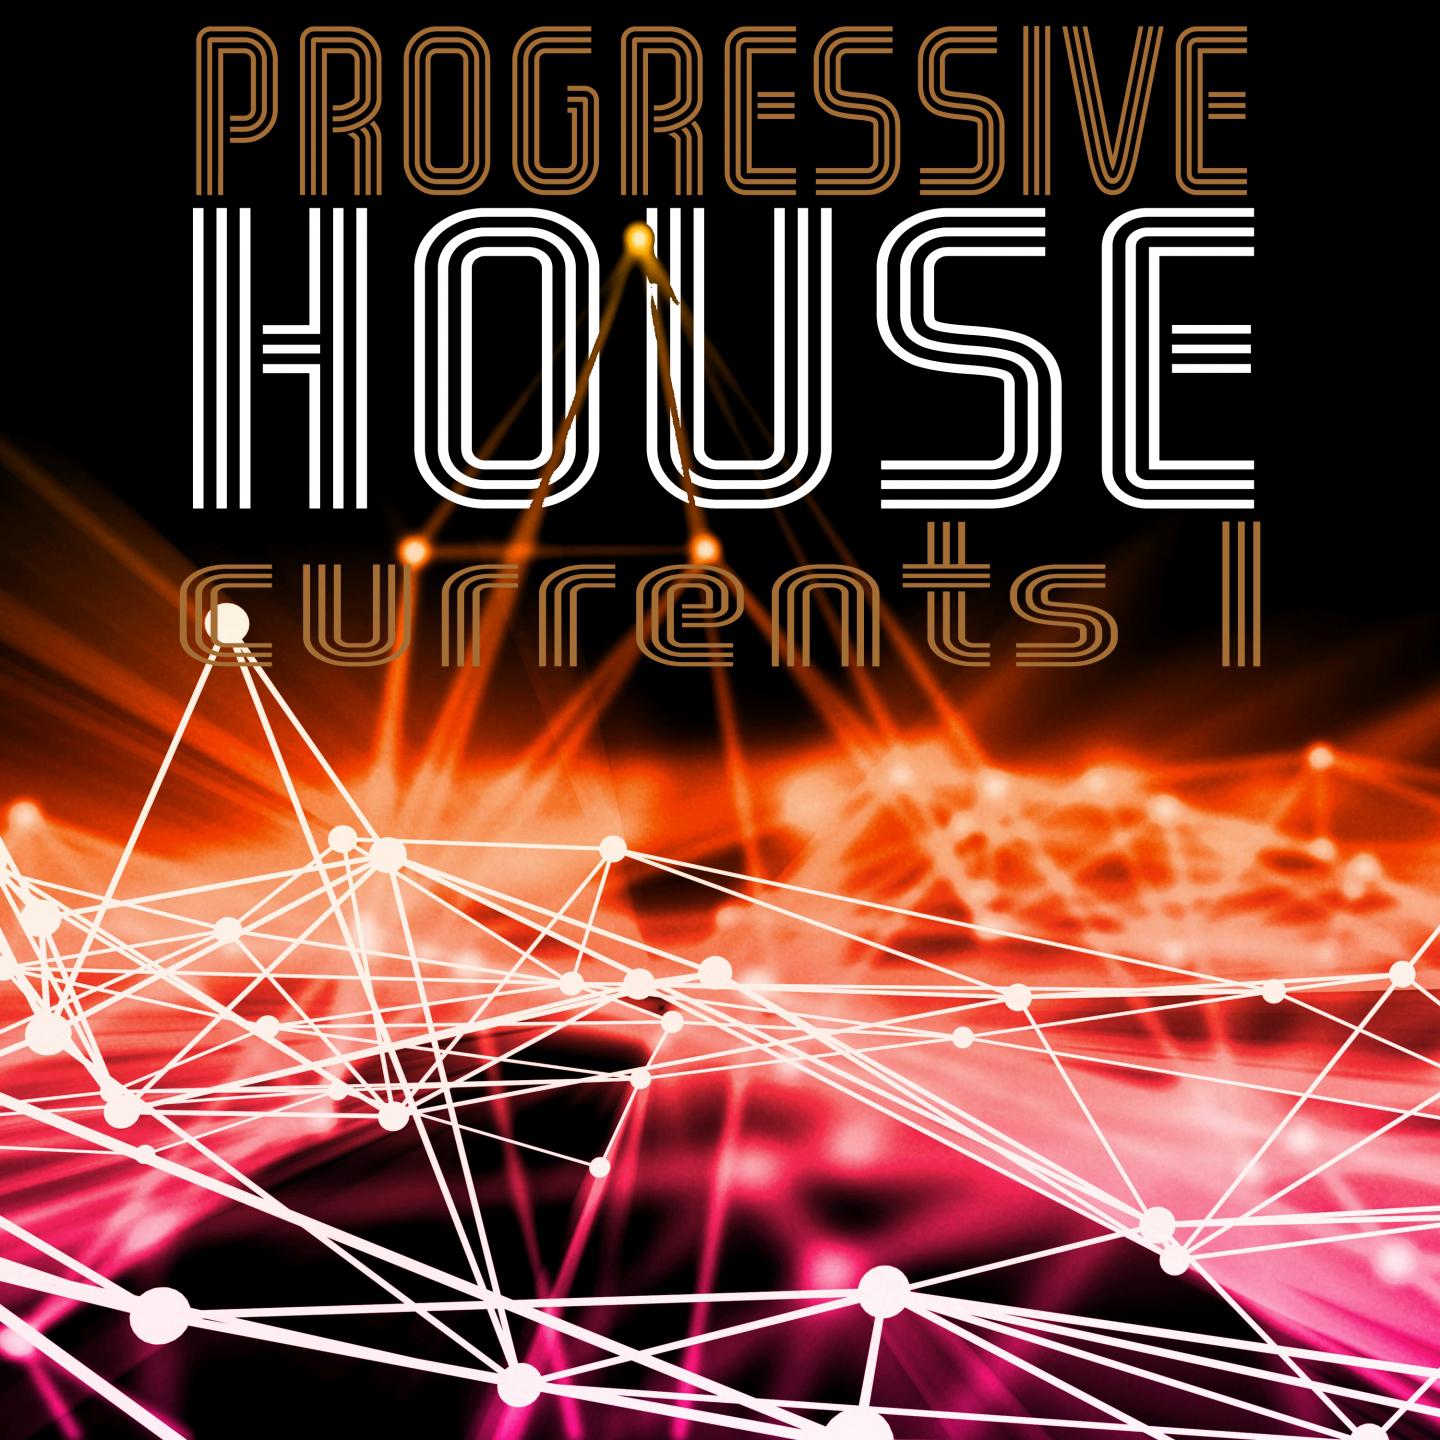 Progressive House Currents, Vol. 1